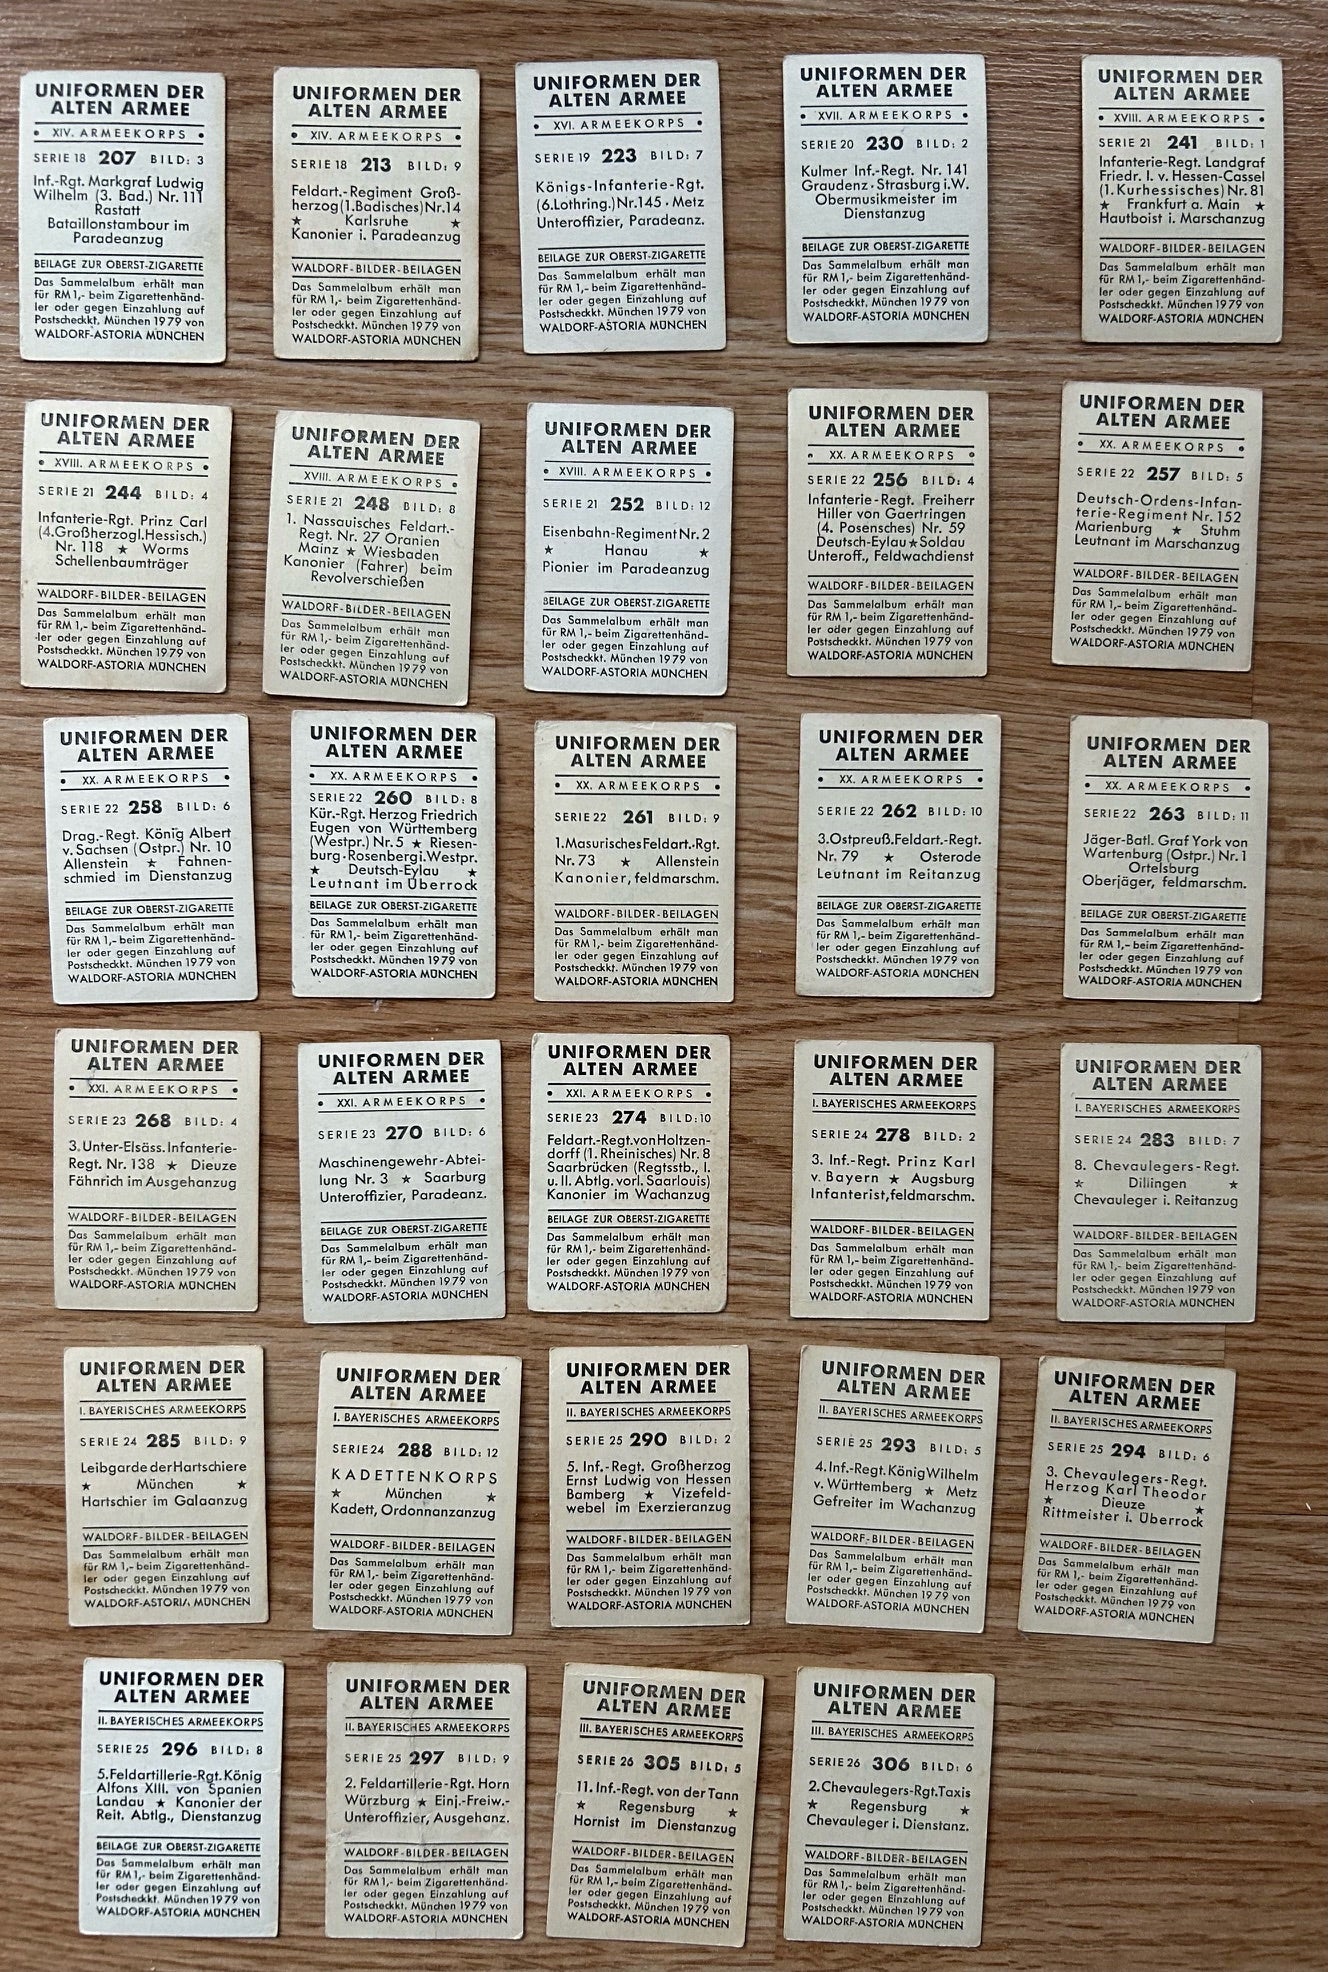 89 Uniformen der alten Armee series cigarette cards